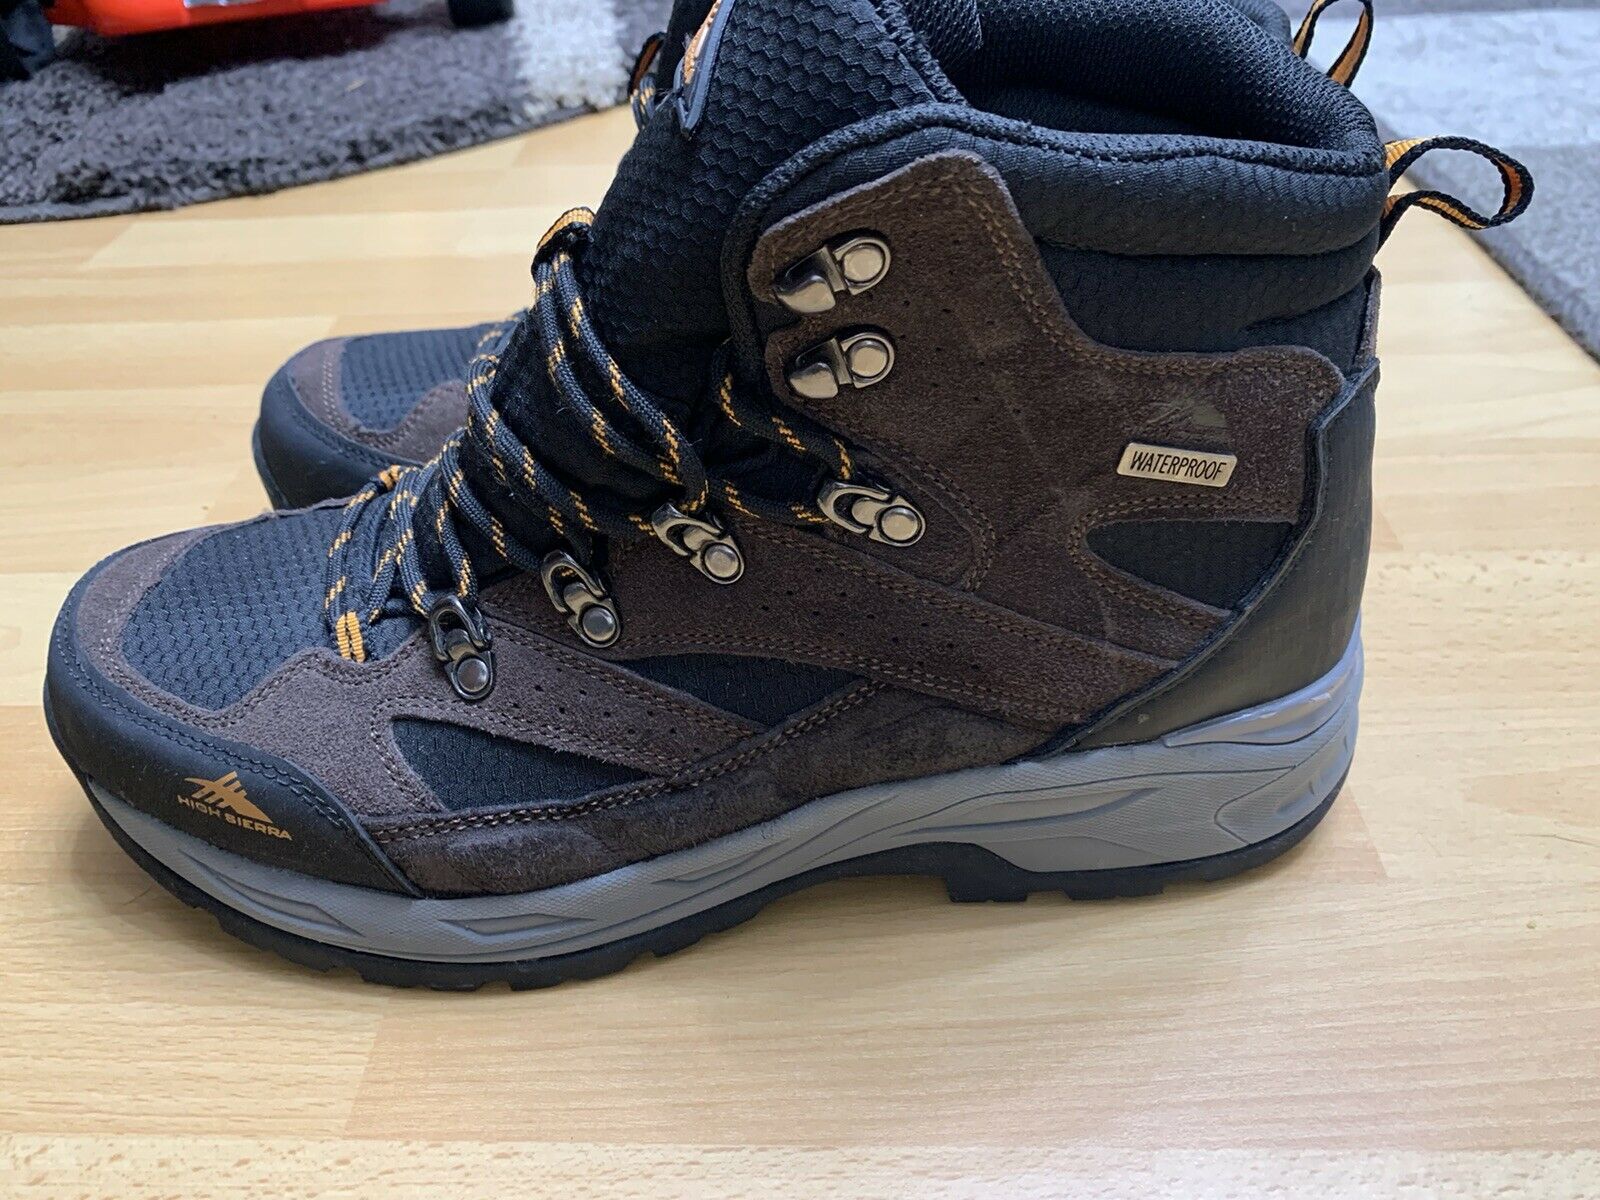 High Sierra Trekker Men's Waterproof 10.5 Hiking Boots